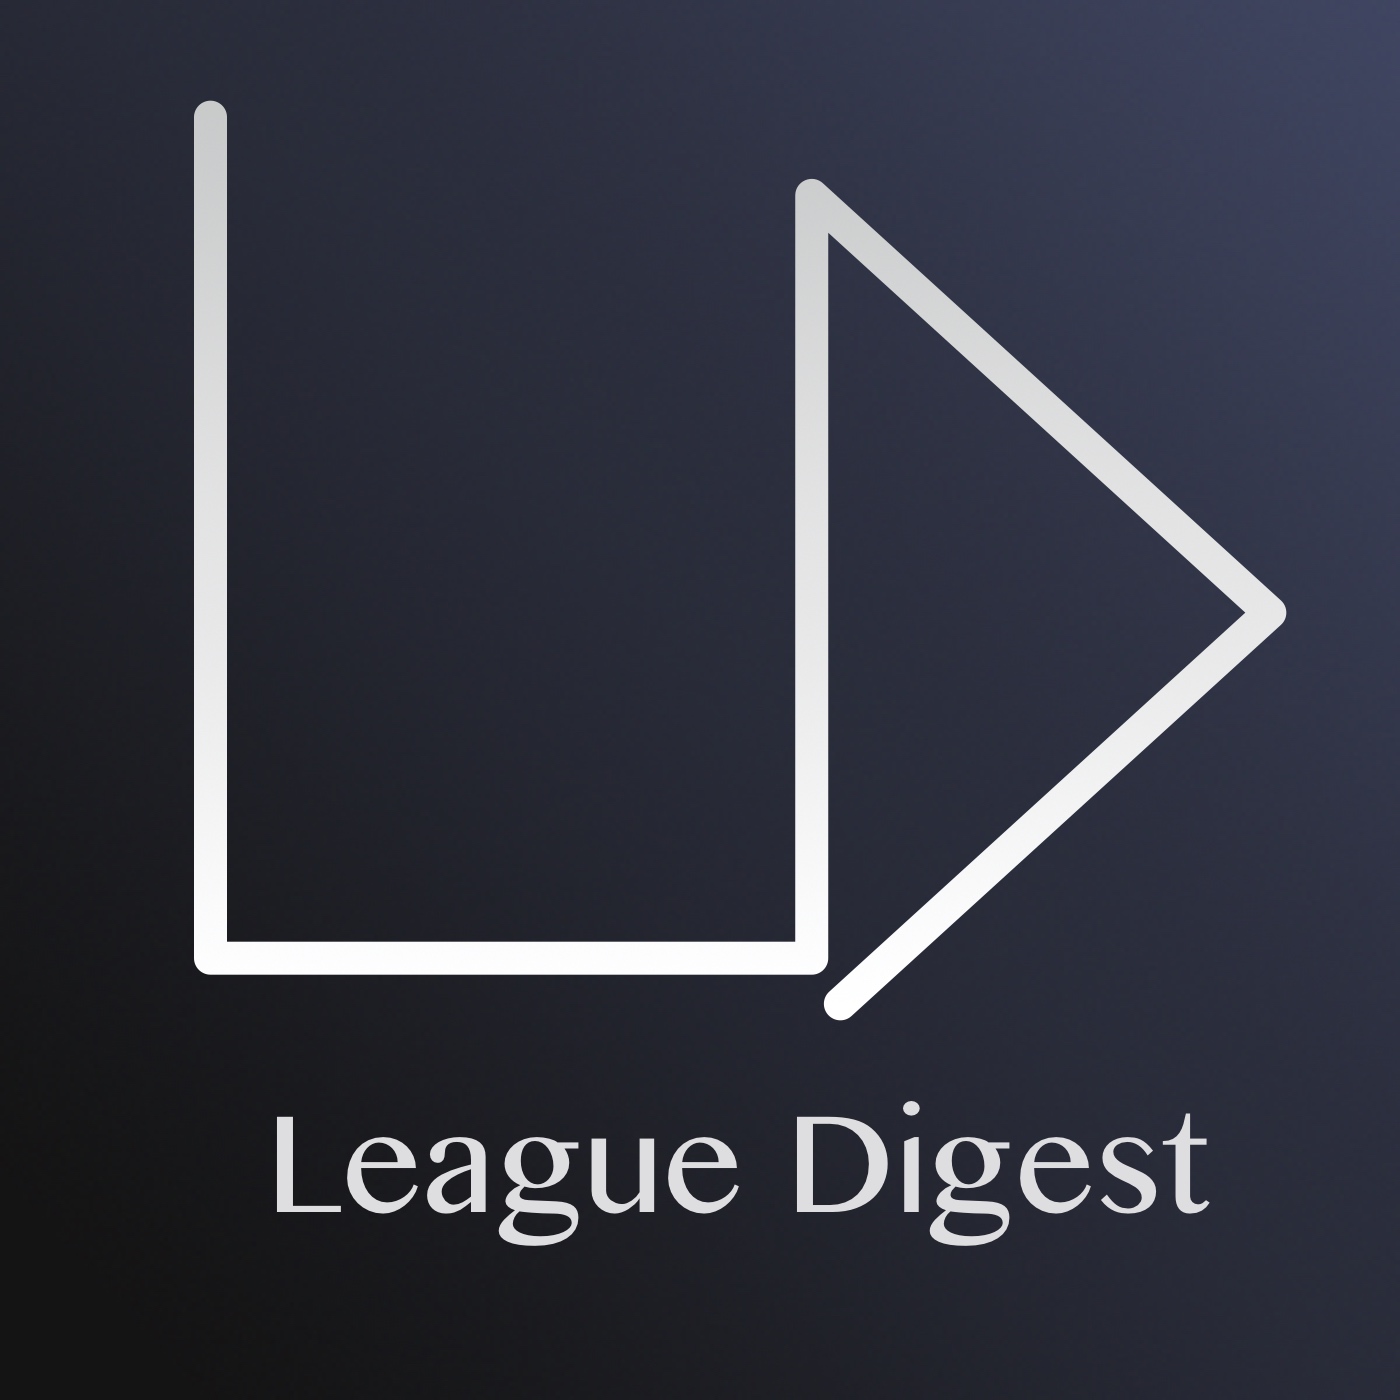 League Digest